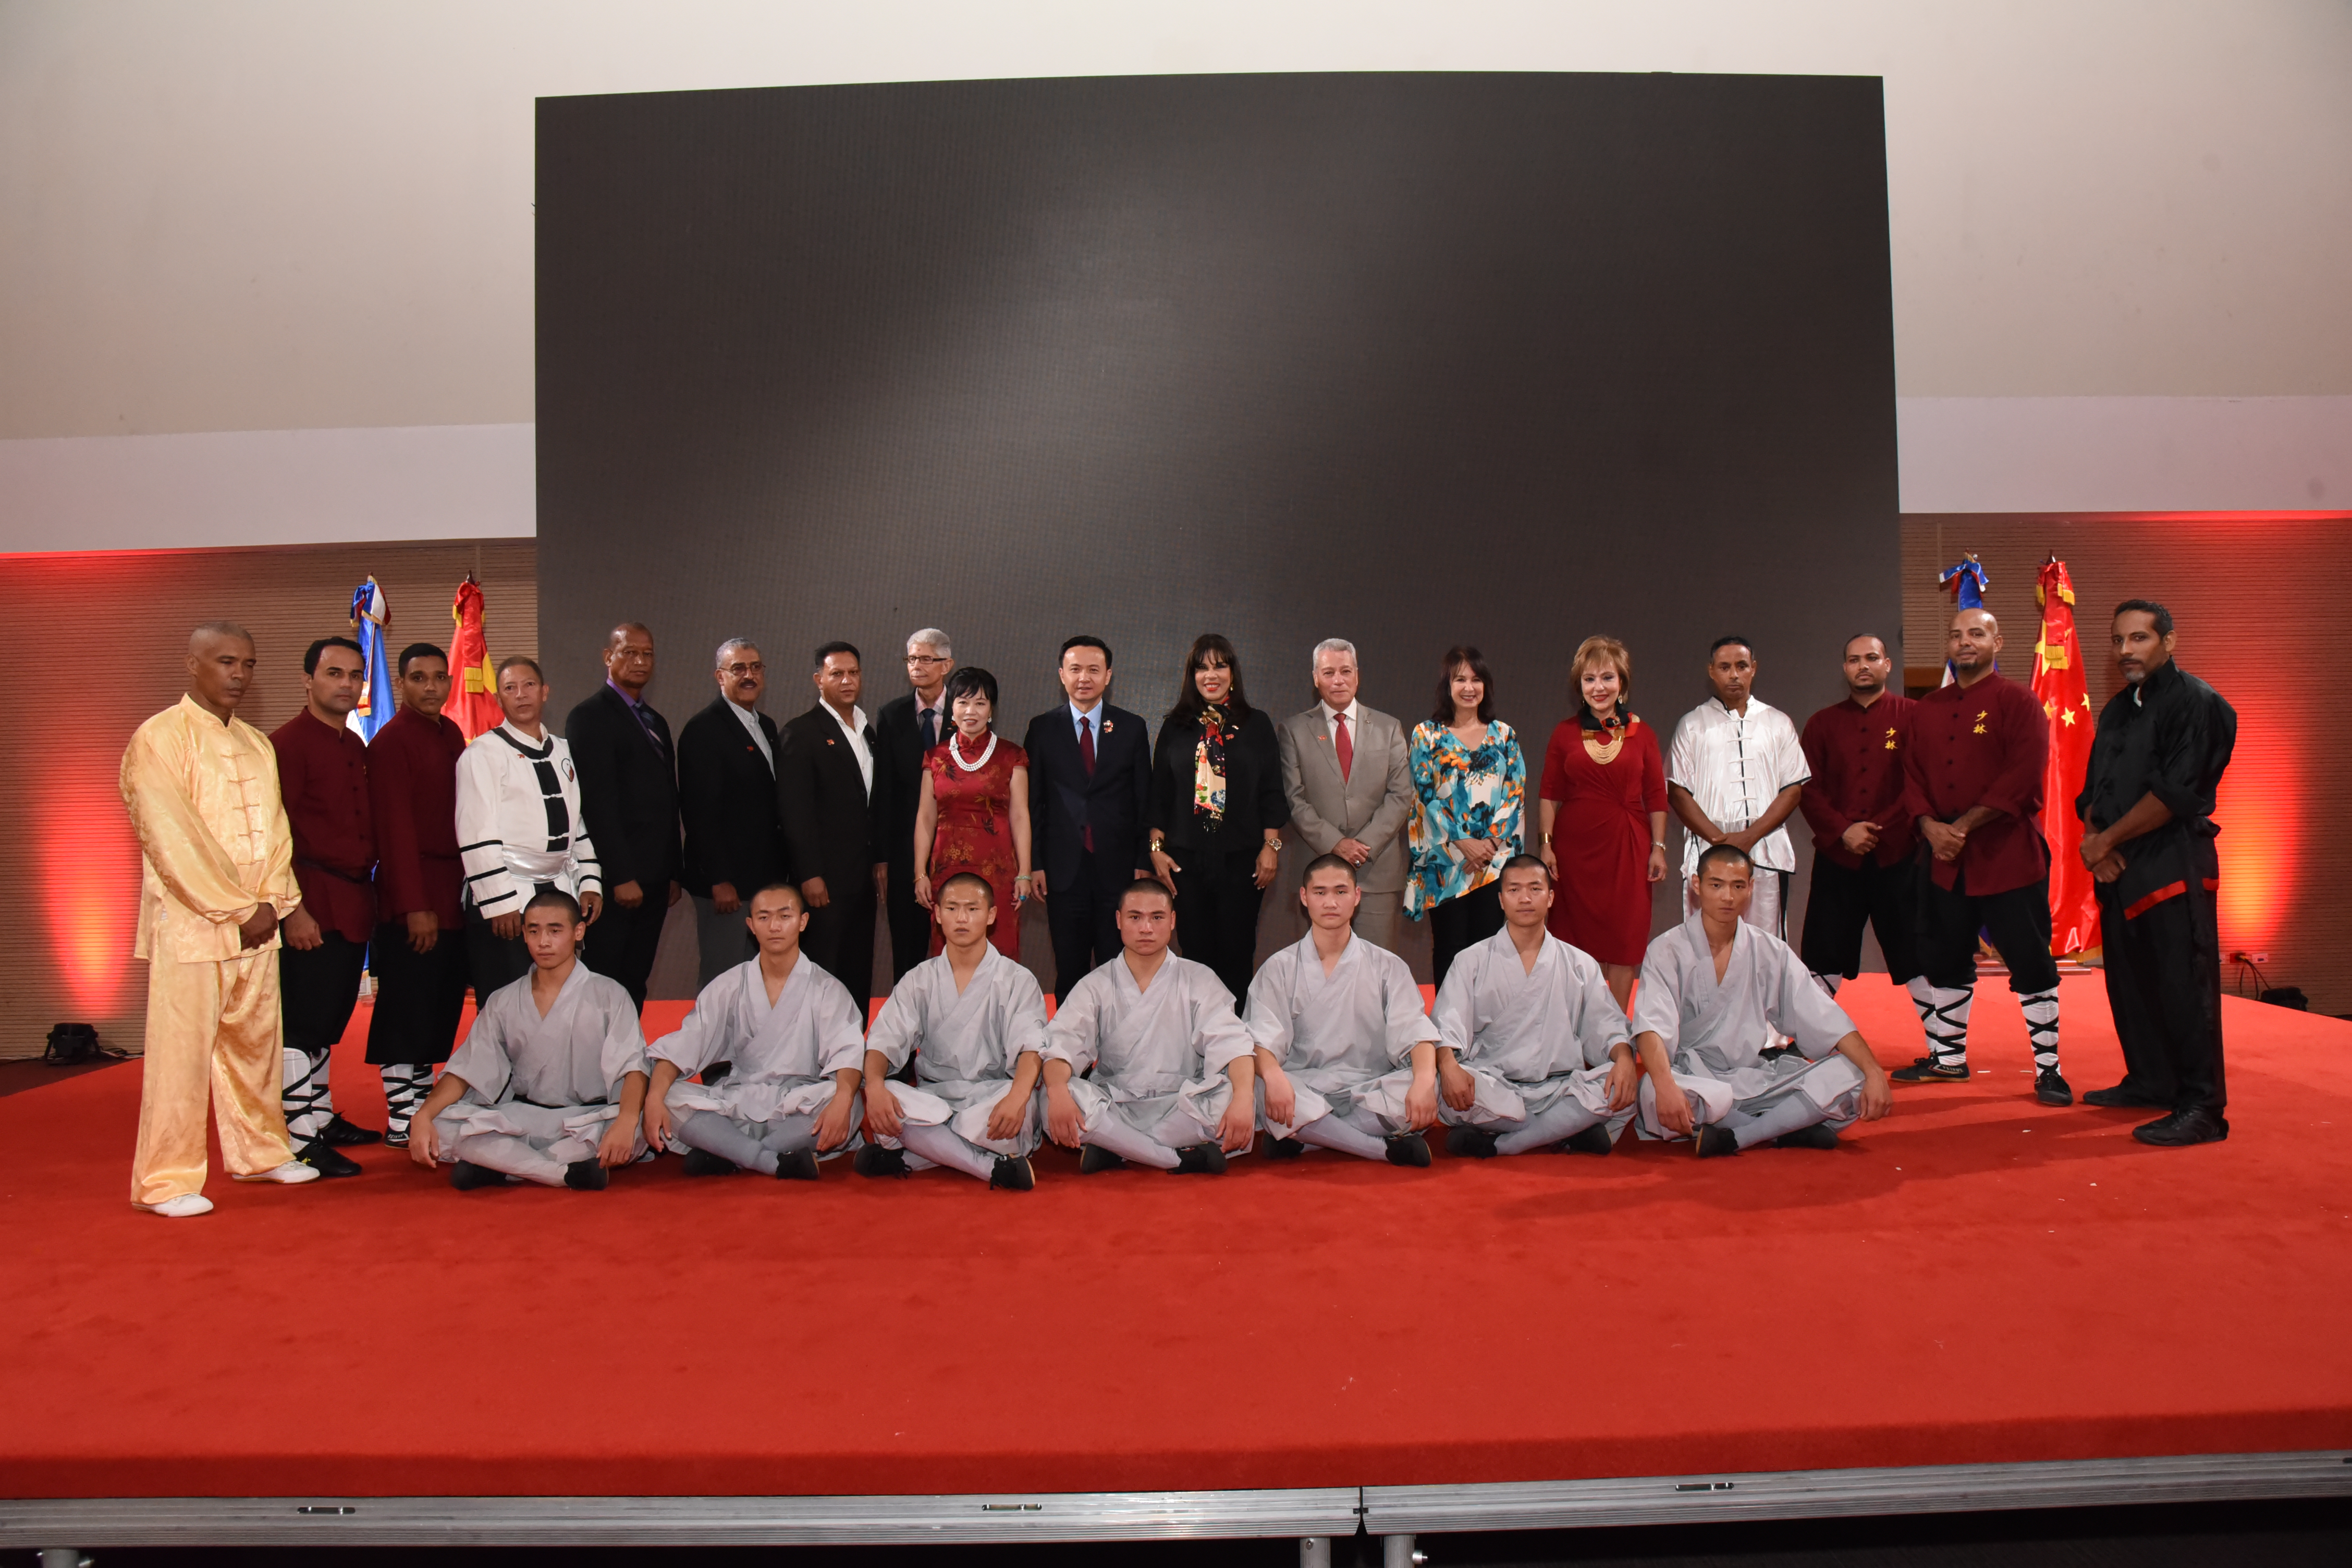 Cancillería dominicana acoge presentación monjes del templo de Shaolin